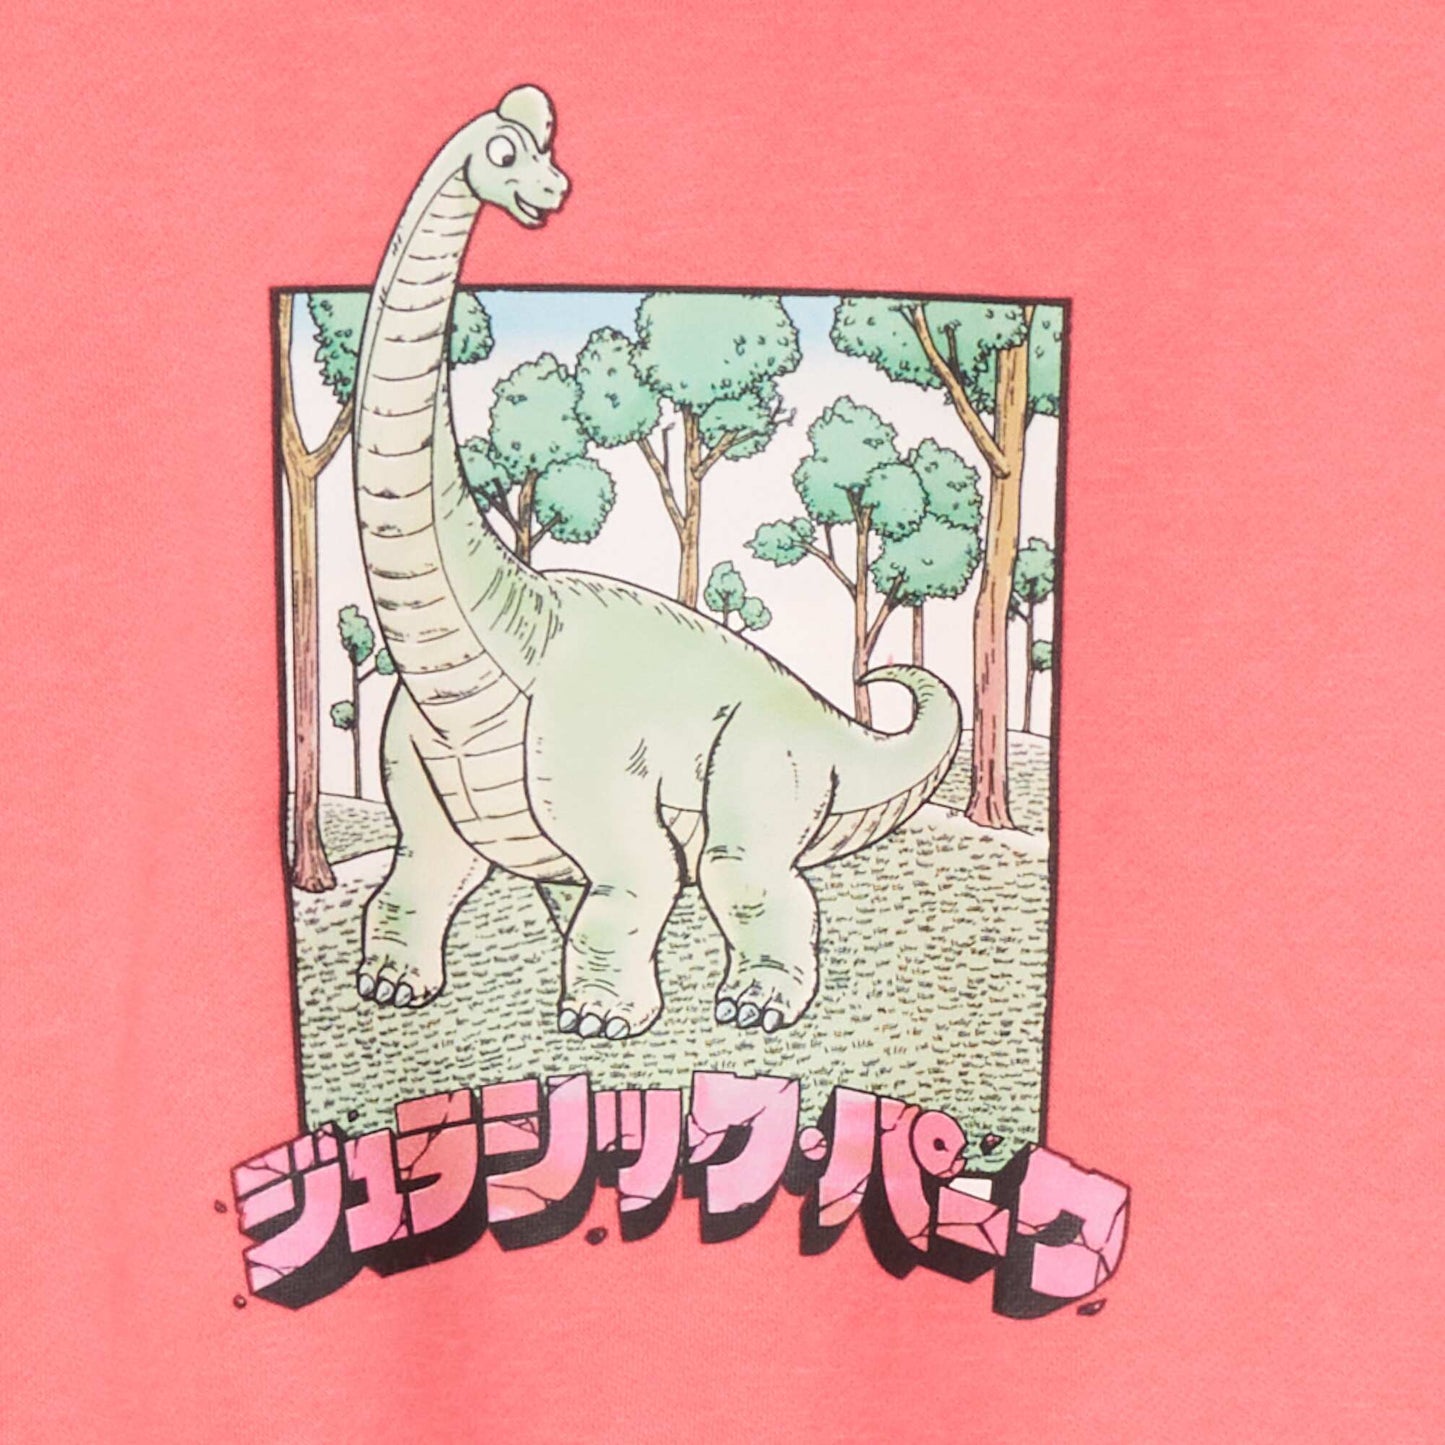 'Jurassic Park' hoodie Pink